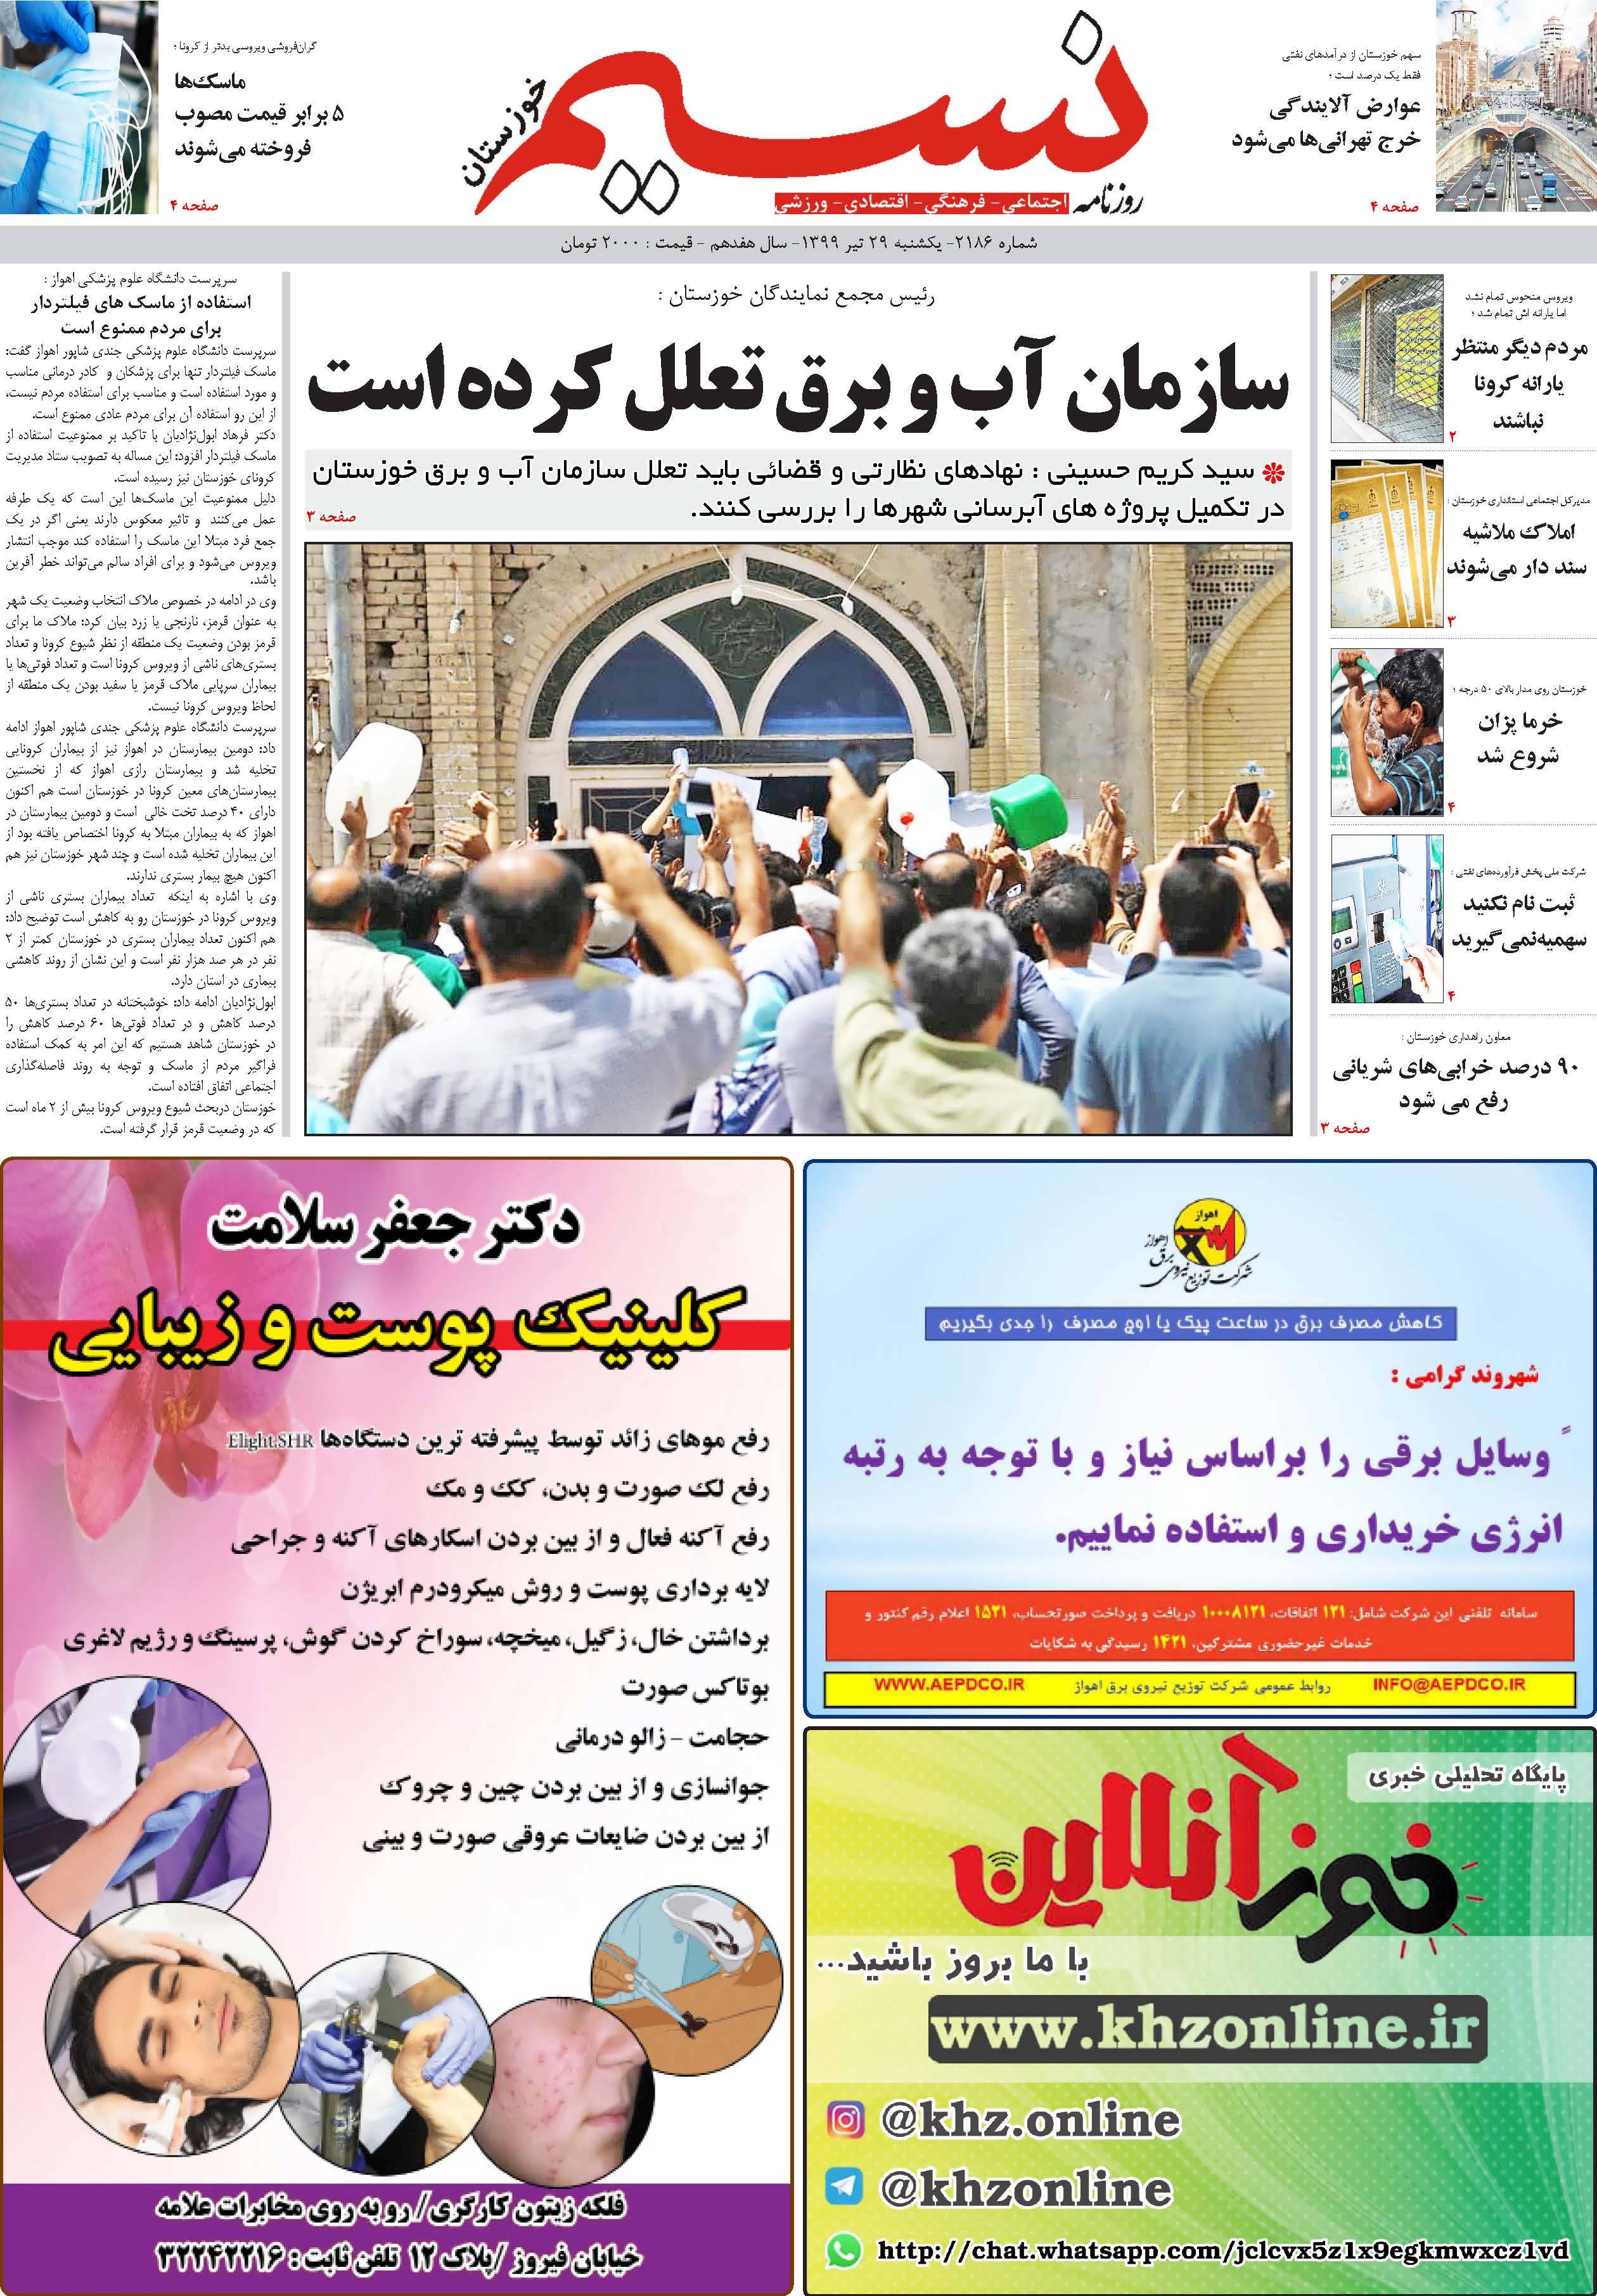 صفحه اصلی روزنامه نسیم شماره 2186 